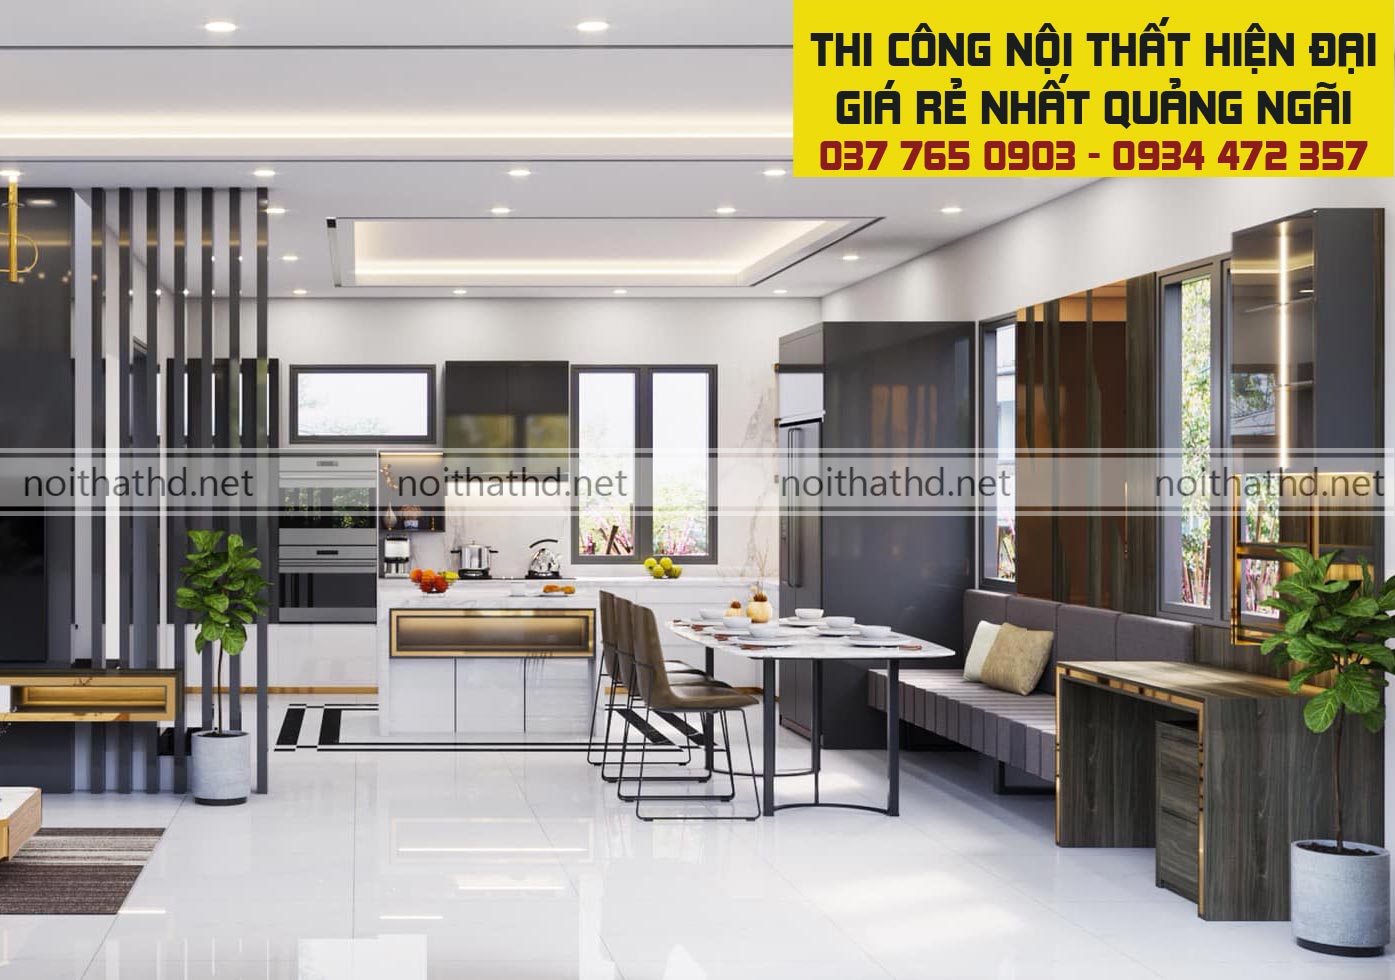 Hơn 60 mẫu thiết kế nội thất hiện đại đẹp thi công tại Quảng Ngãi 2021